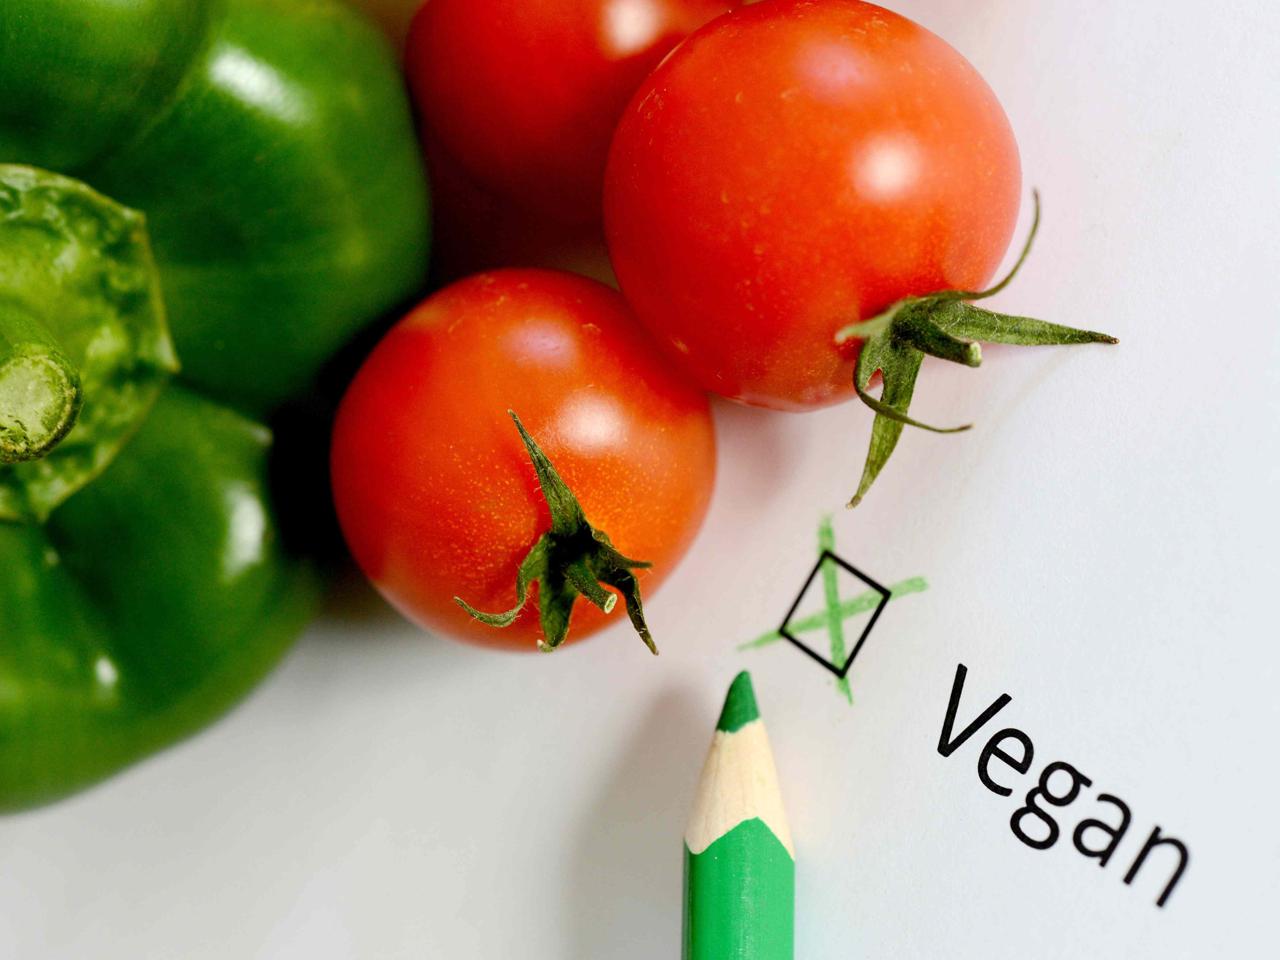 Alimenti: vegCoach, per i più piccoli serve equilibrio e dieta ben pianificata 